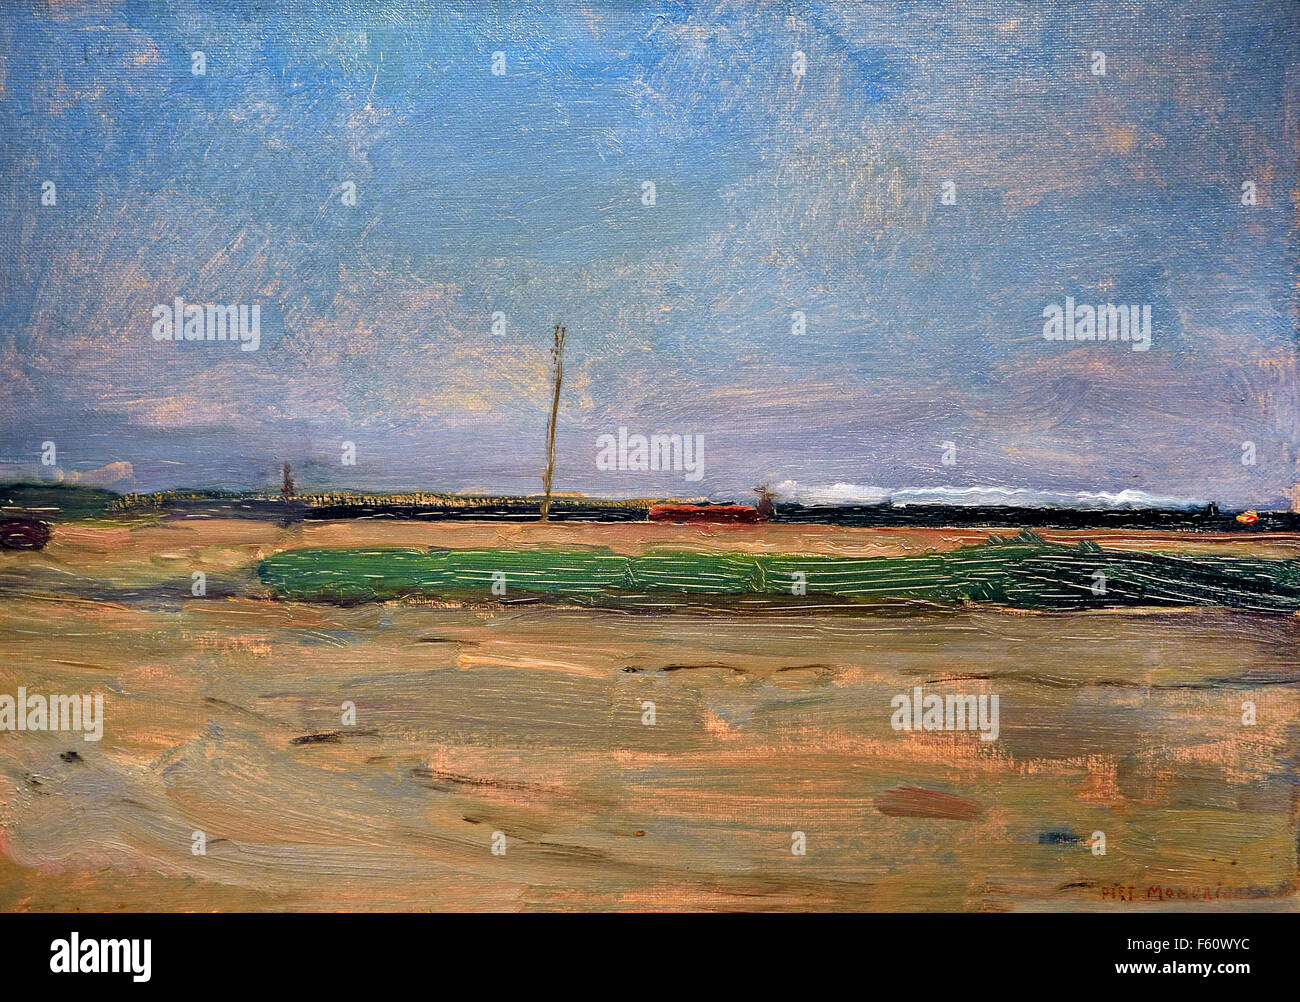 Polder-Landschaft mit einem Zug am Horizont Piet Mondrian1872 1907-1944 (Mondriaan) Niederlande Niederlande Stockfoto